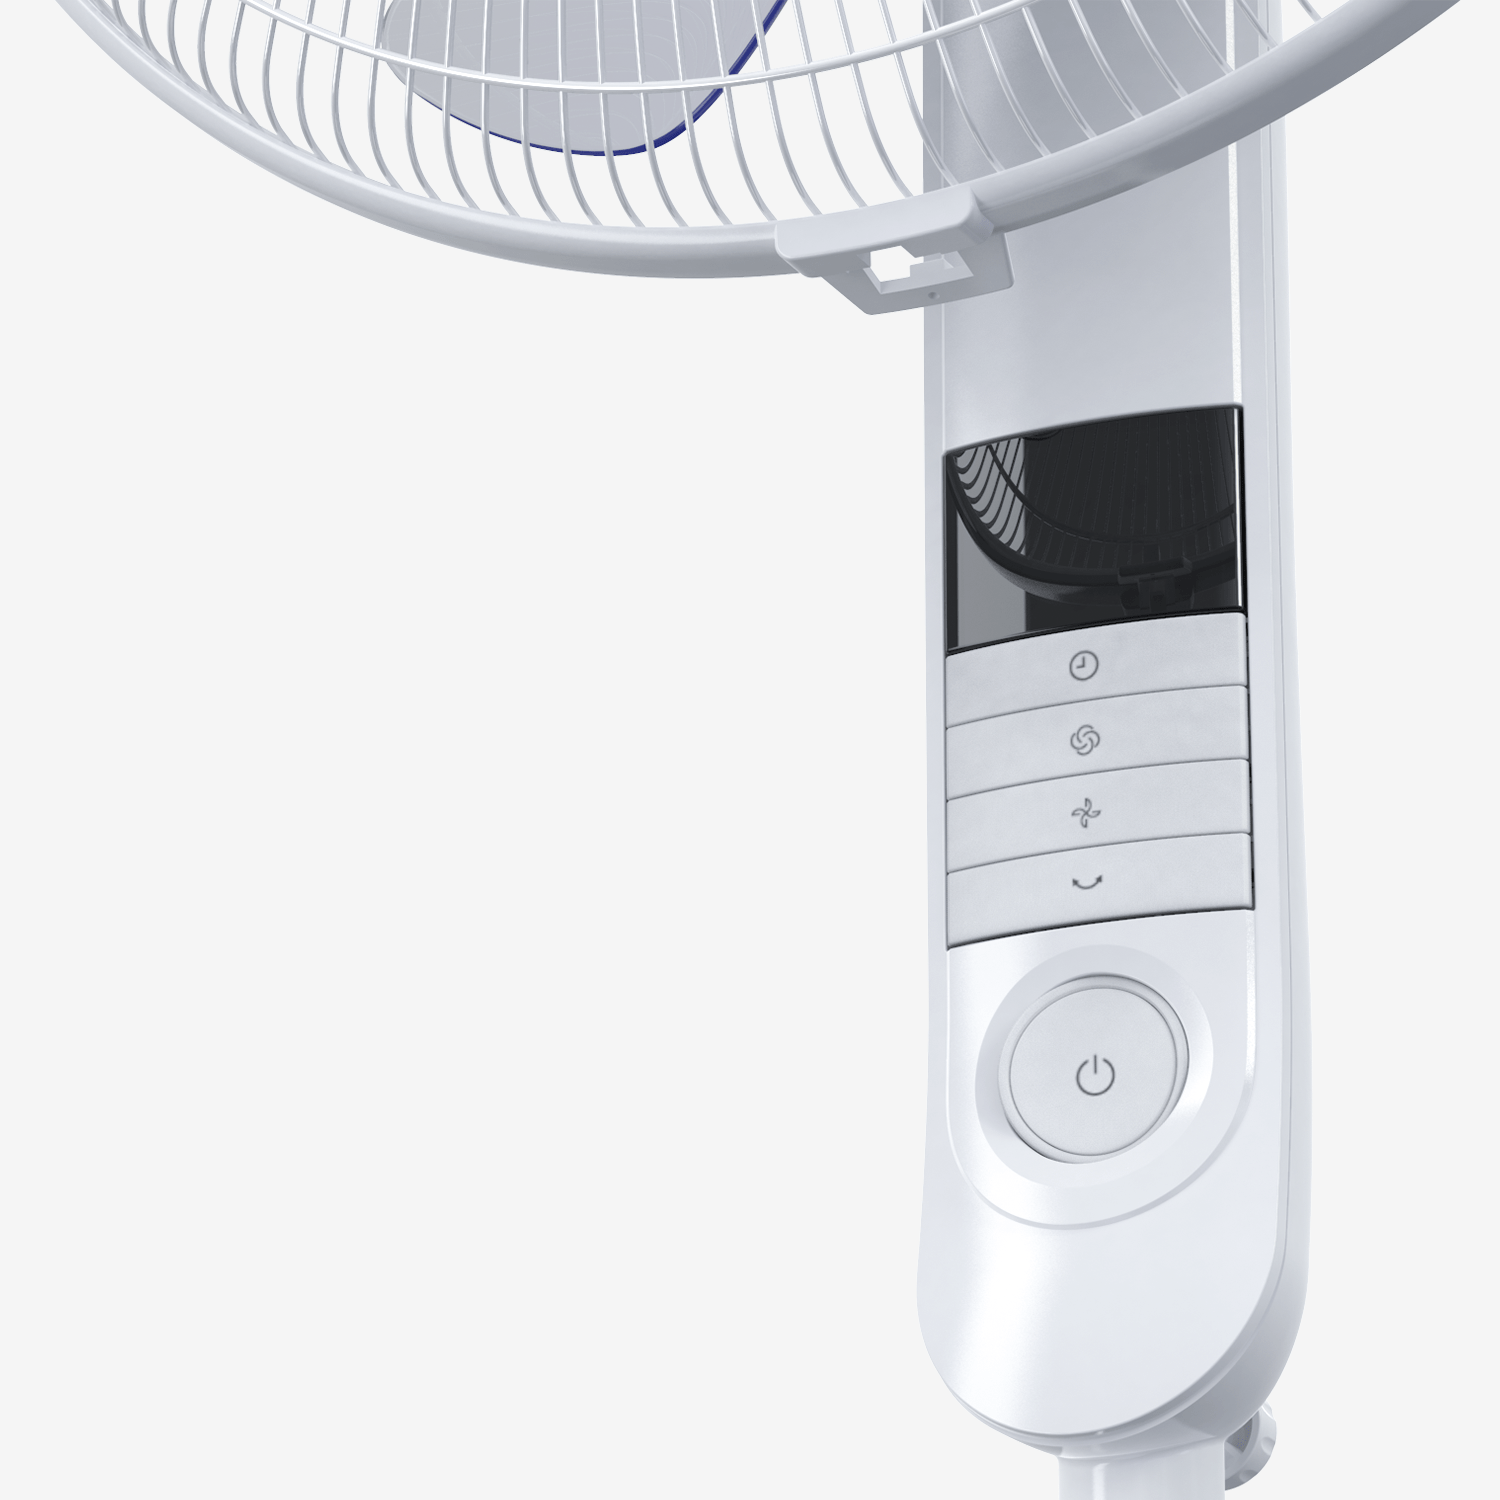 Ventilador de pedestal de 16" con 4 modos de ventilador y control remoto - Blanco